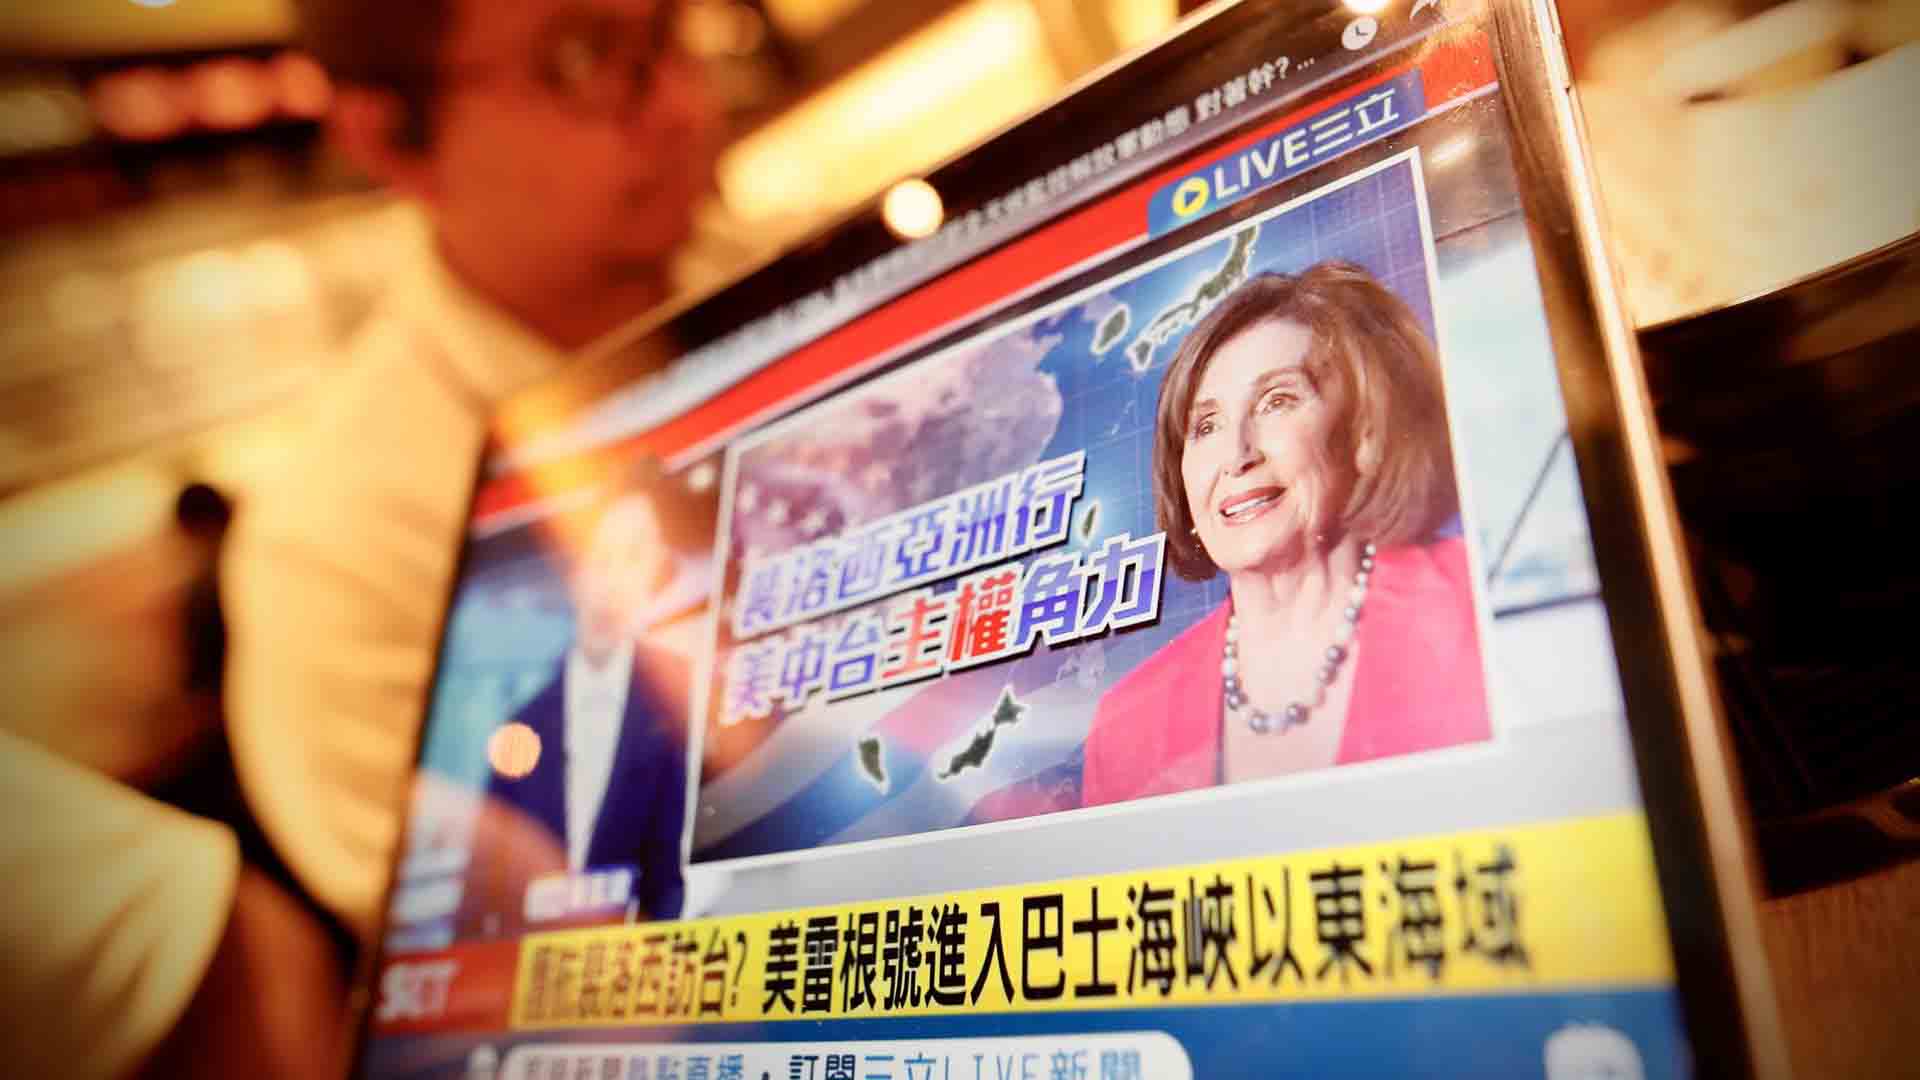 Taiwán se enfrenta a “consecuencias desastrosas” ante posible viaje de Pelosi: portavoz en China